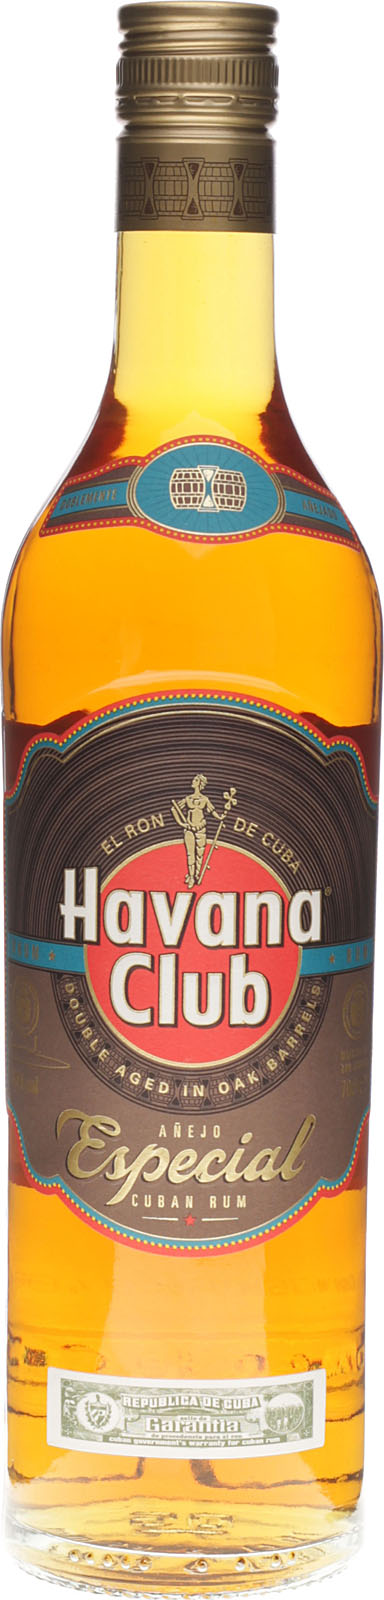 Havana Club Añejo Especial barfish.de kaufen bei